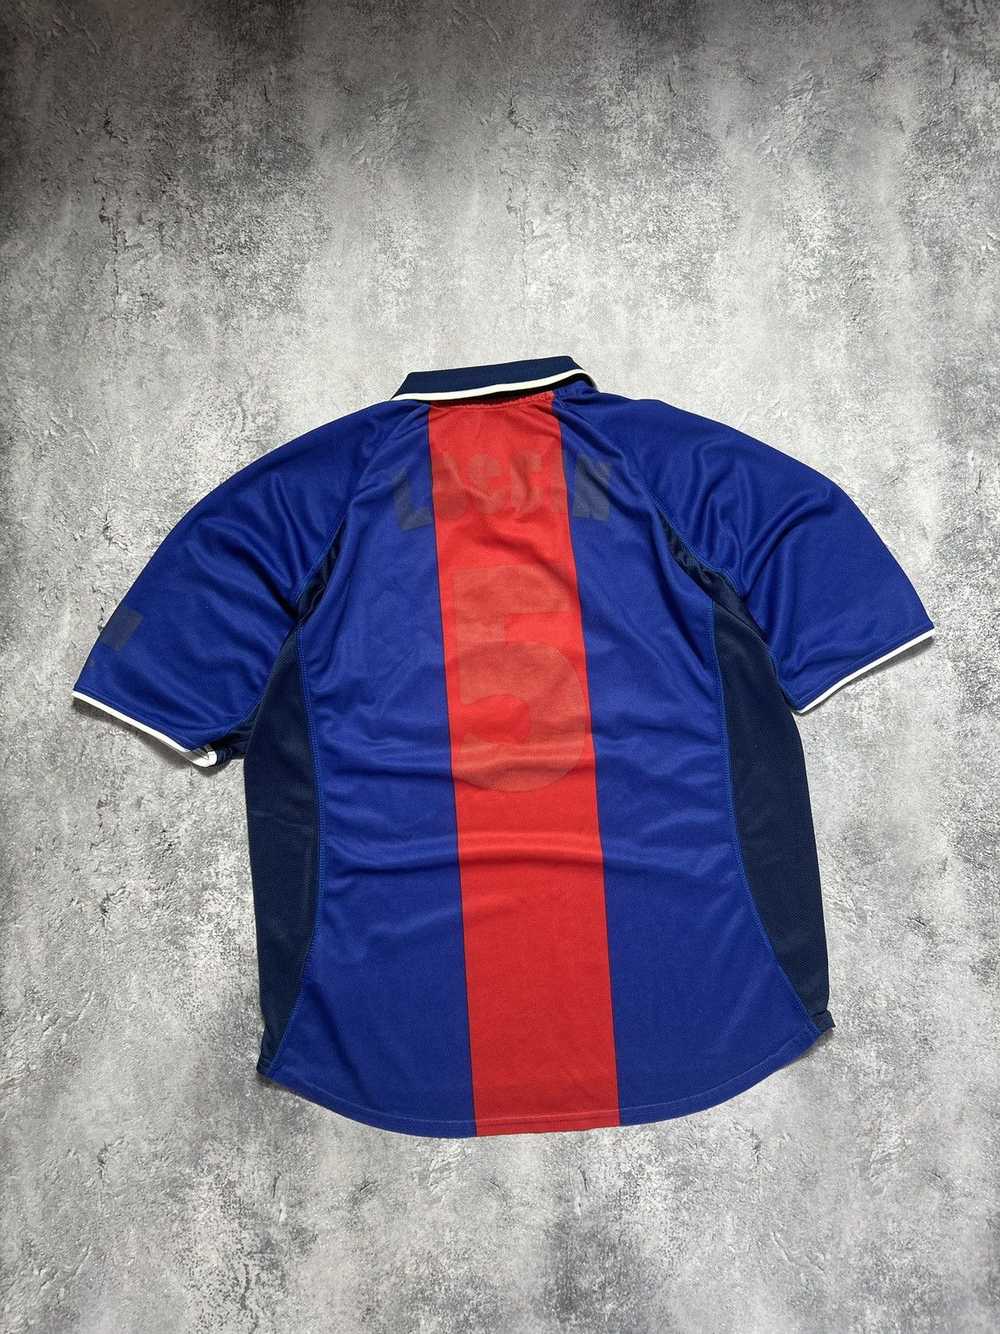 Nike × Soccer Jersey × Vintage Vintage Jersey Nik… - image 6